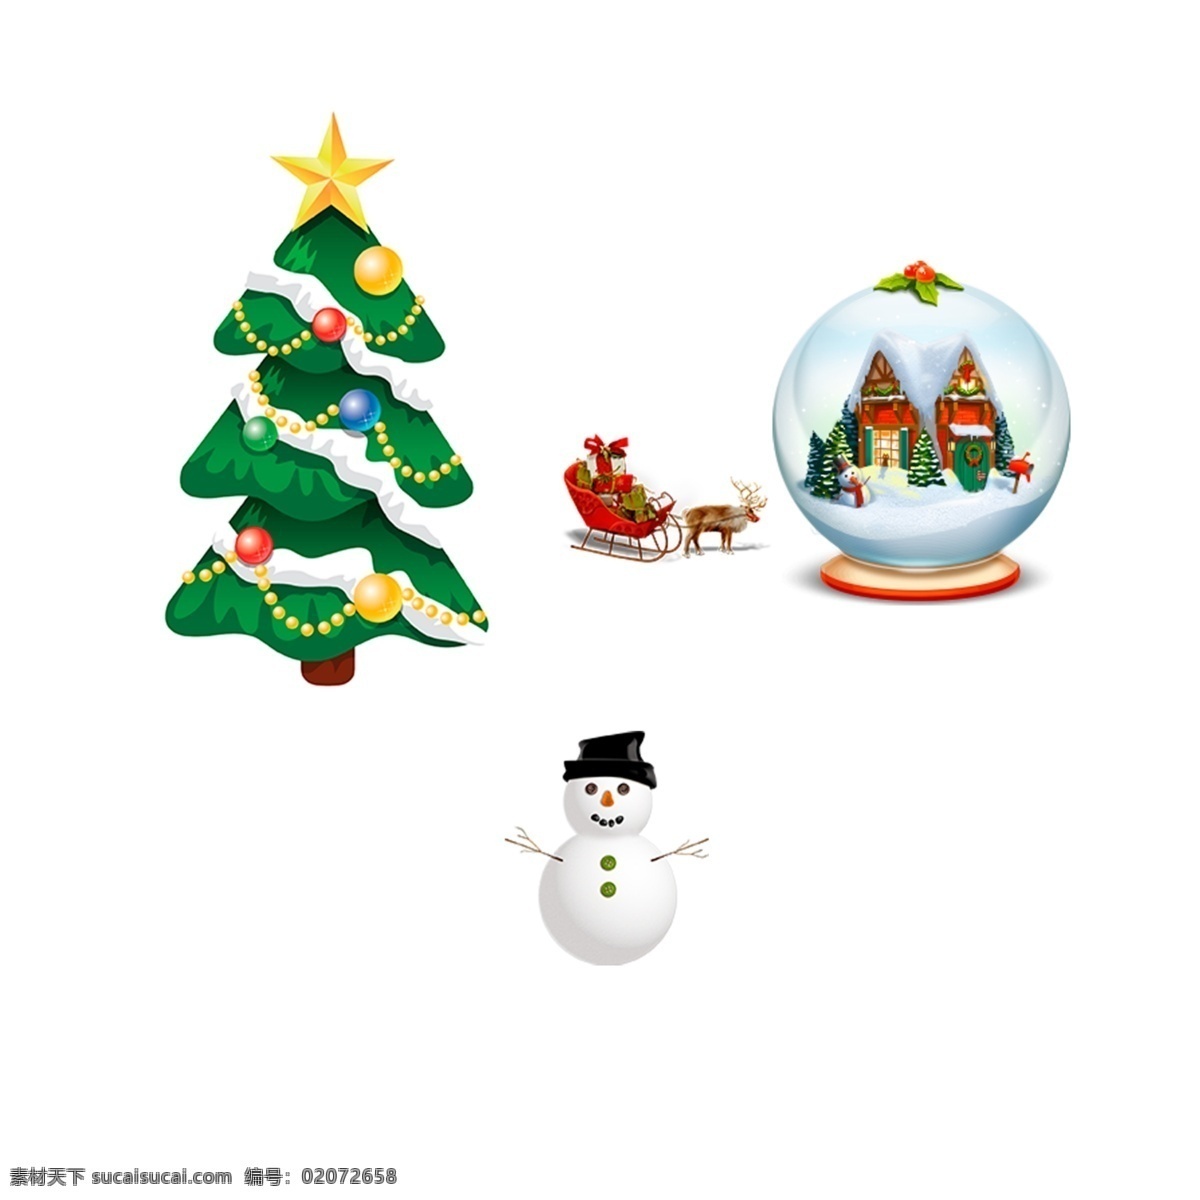 圣诞礼物 圣诞树 圣诞元素 圣诞老人 雪橇 圣诞海报 圣诞快乐 节日